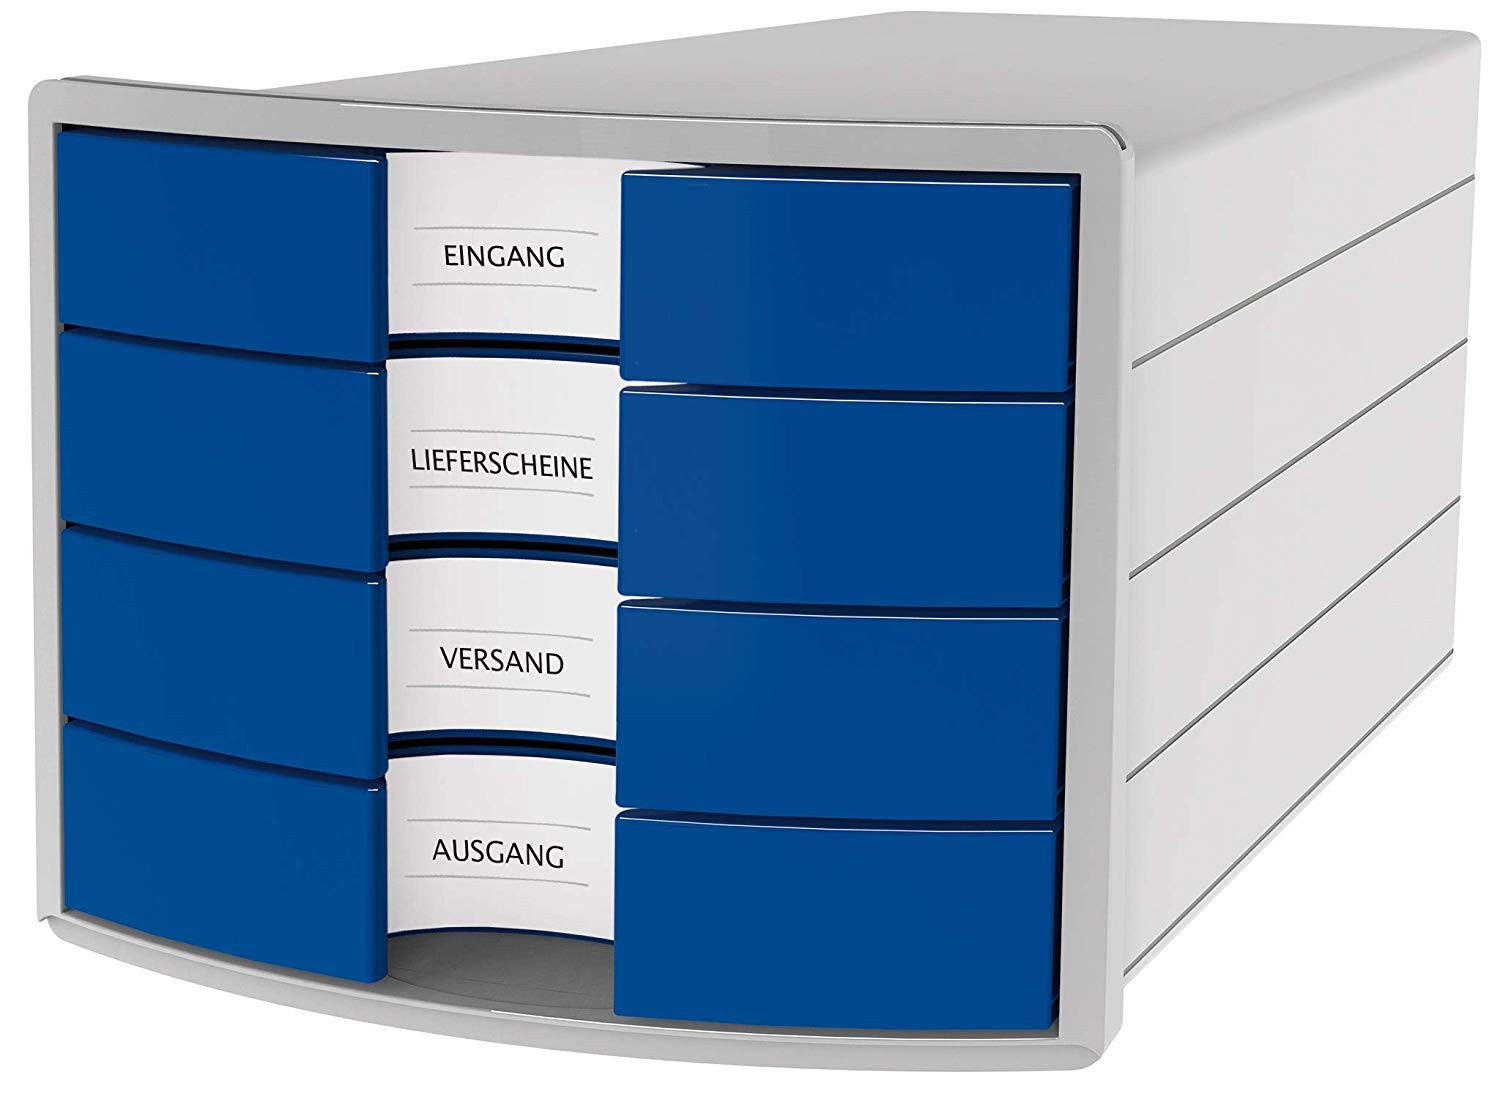 Suport plastic cu 4 sertare pt. documente, HAN Impuls 2.0 - gri deschis - sertare albastre